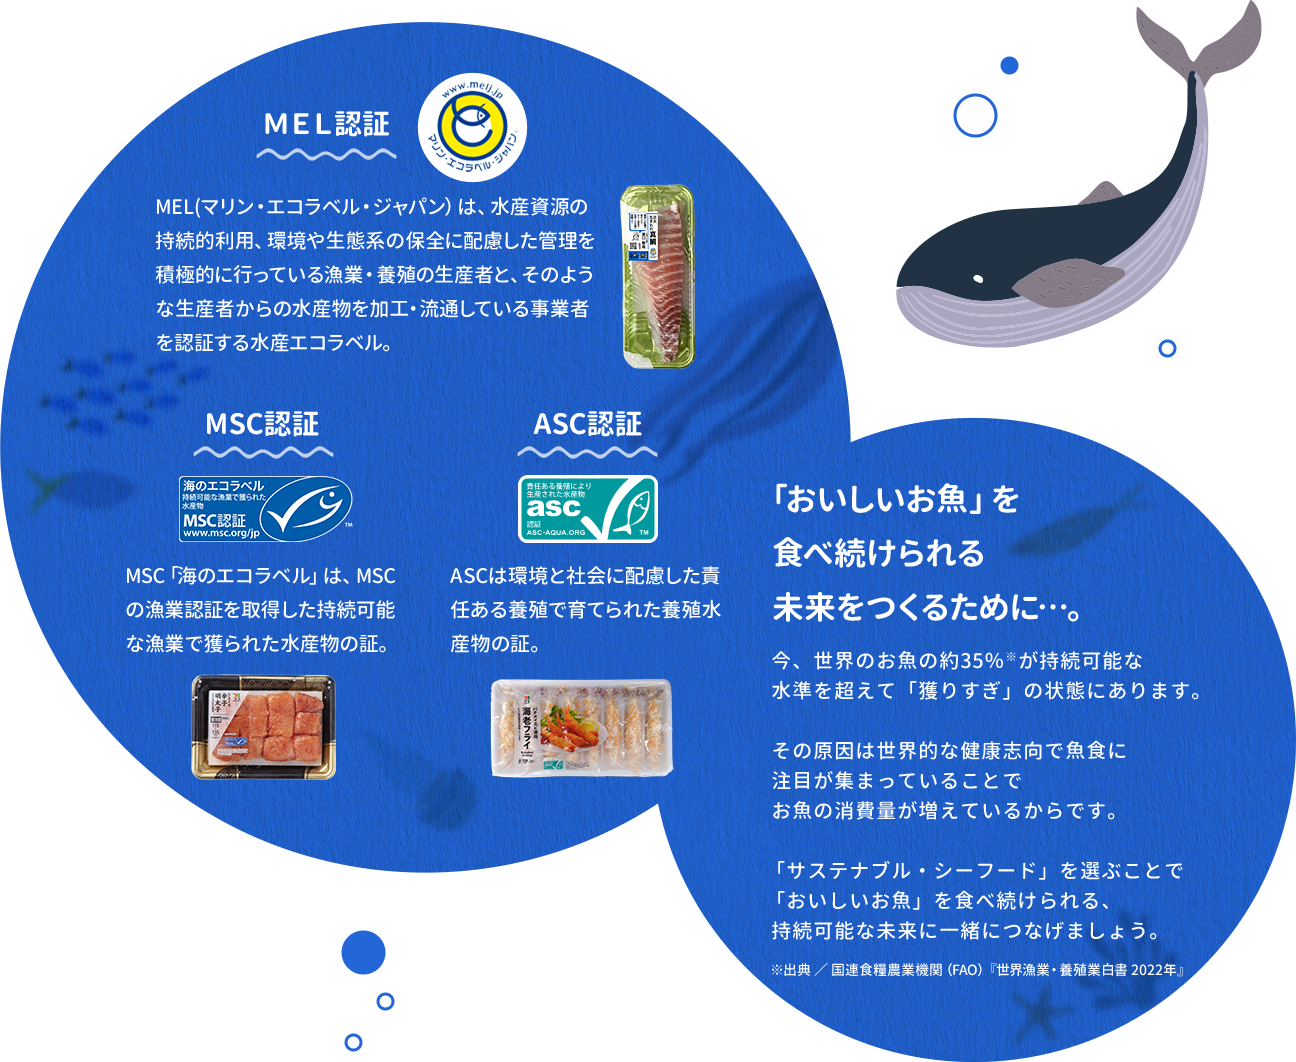 MEL認証、MSC認証、ASC認証について、「おいしいお魚」を食べ続けられる未来をつくるために…。